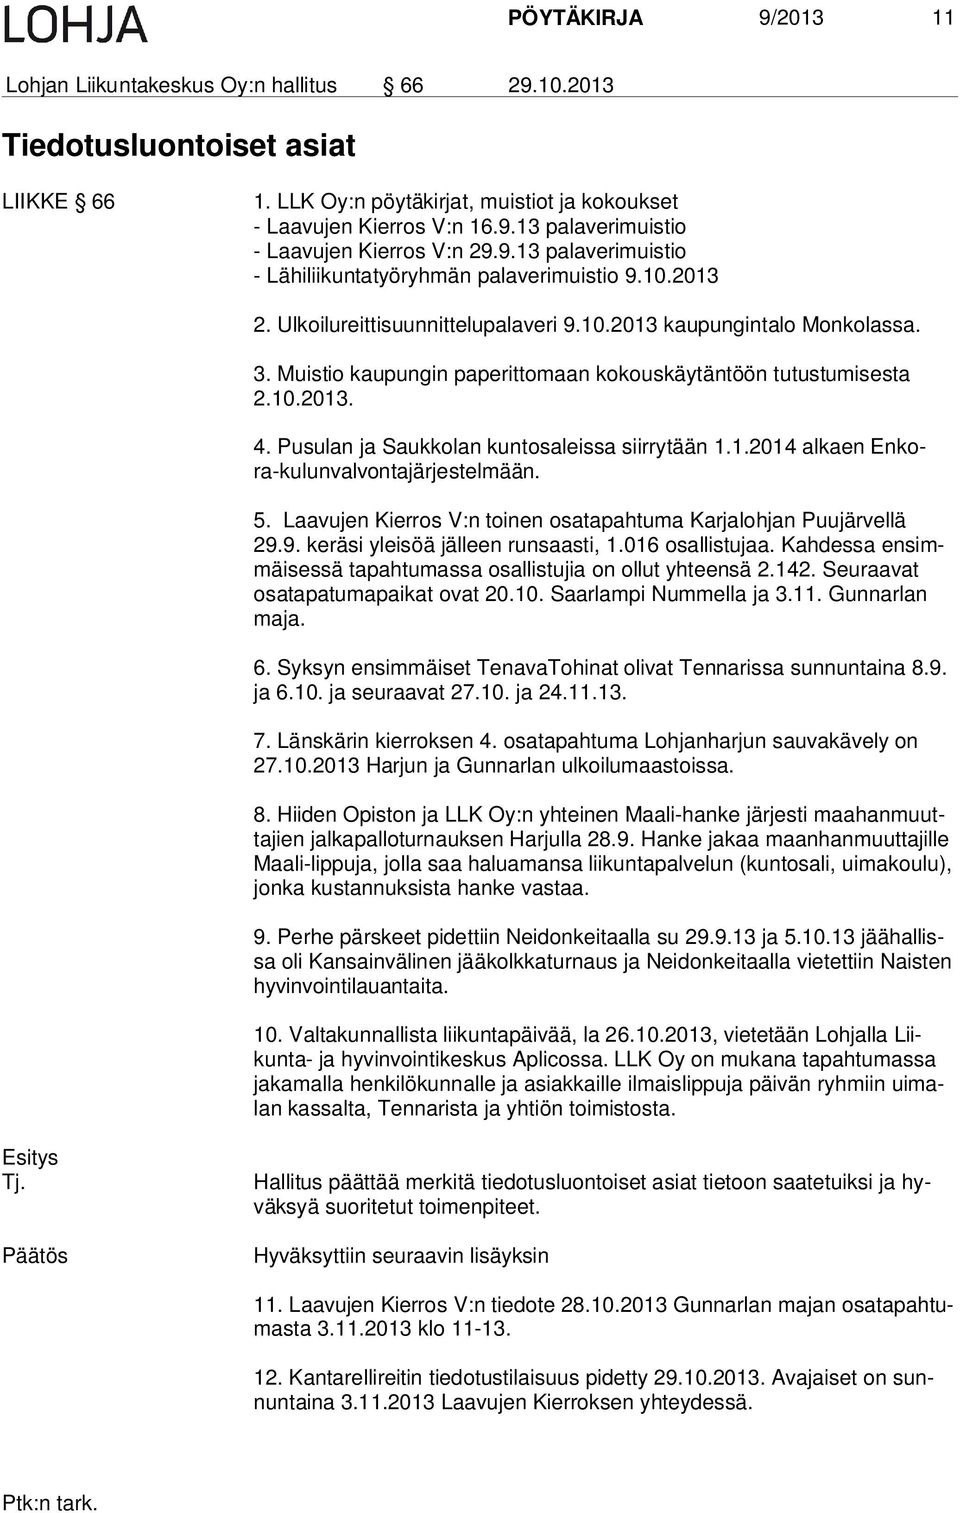 Muistio kaupungin paperittomaan kokouskäytäntöön tutustumisesta 2.10.2013. 4. Pusulan ja Saukkolan kuntosaleissa siirrytään 1.1.2014 alkaen En kora -k u lu n v al von ta jä r je s t e l mä än. 5.